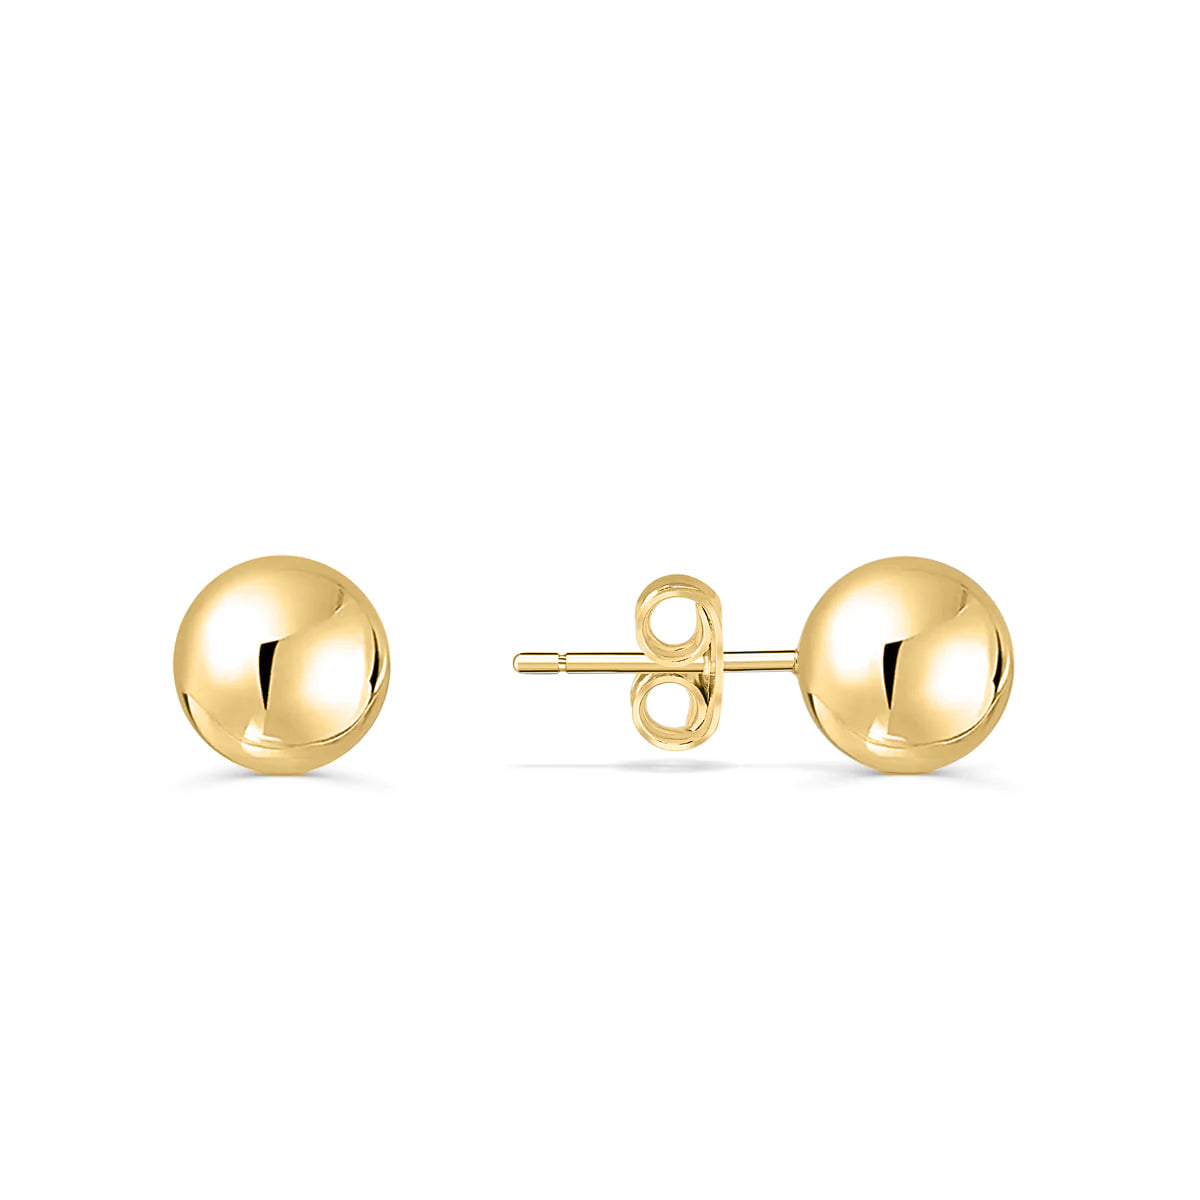 Simple gold stud earrings